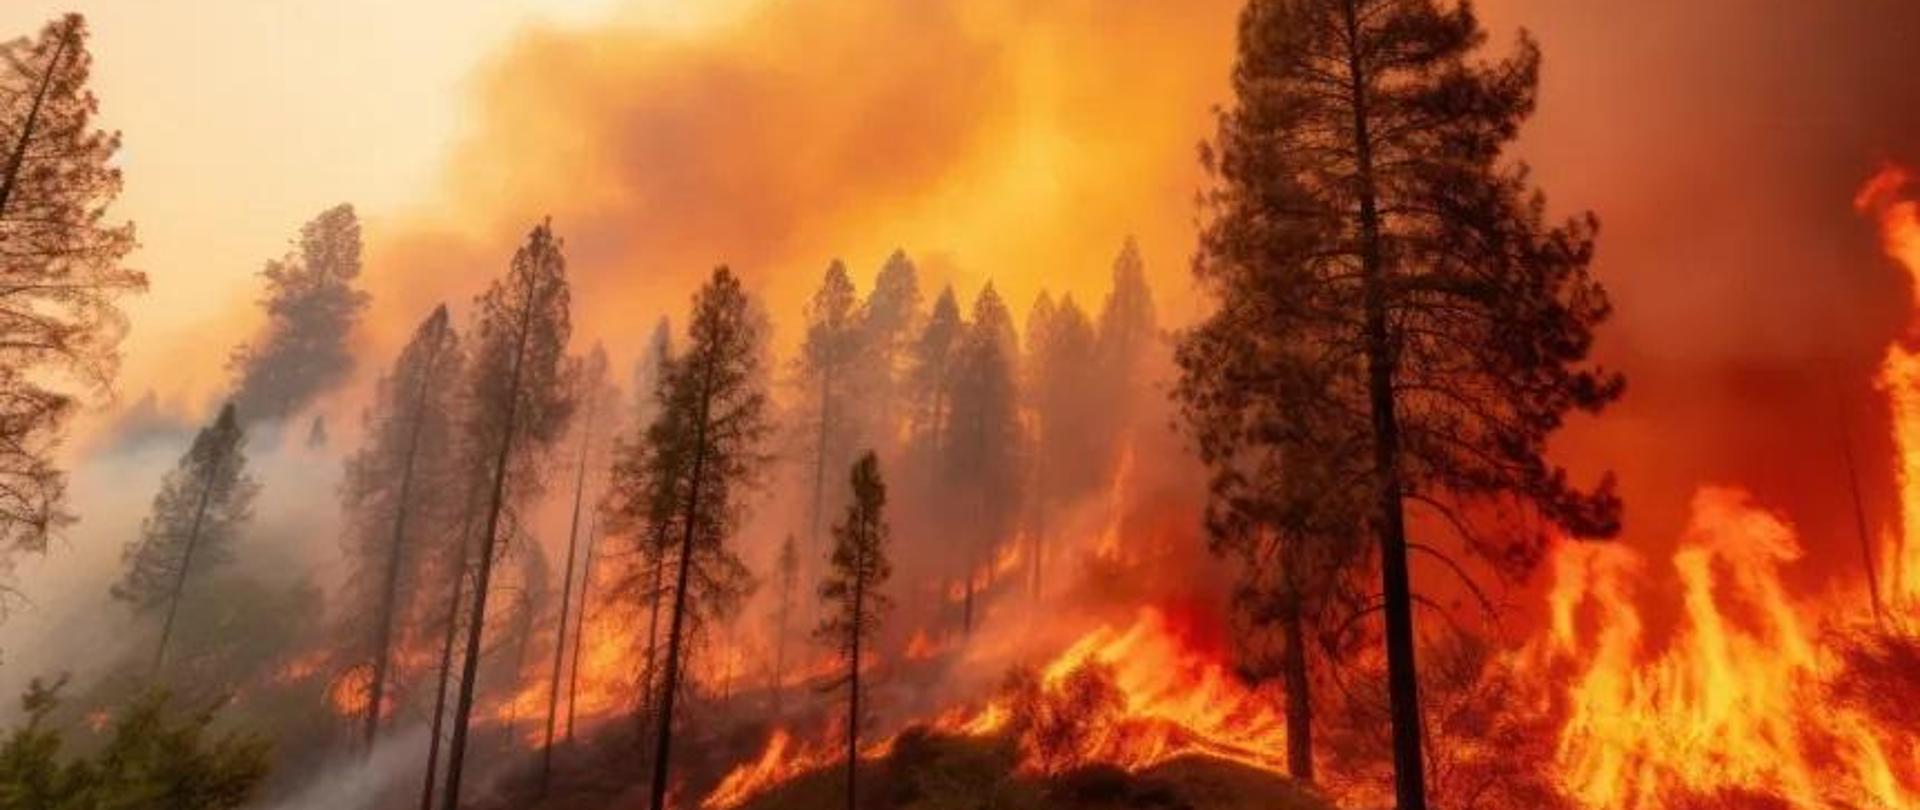 Apel o ostrożność w związku z dużym zagrożeniem pożarowym w lasach!